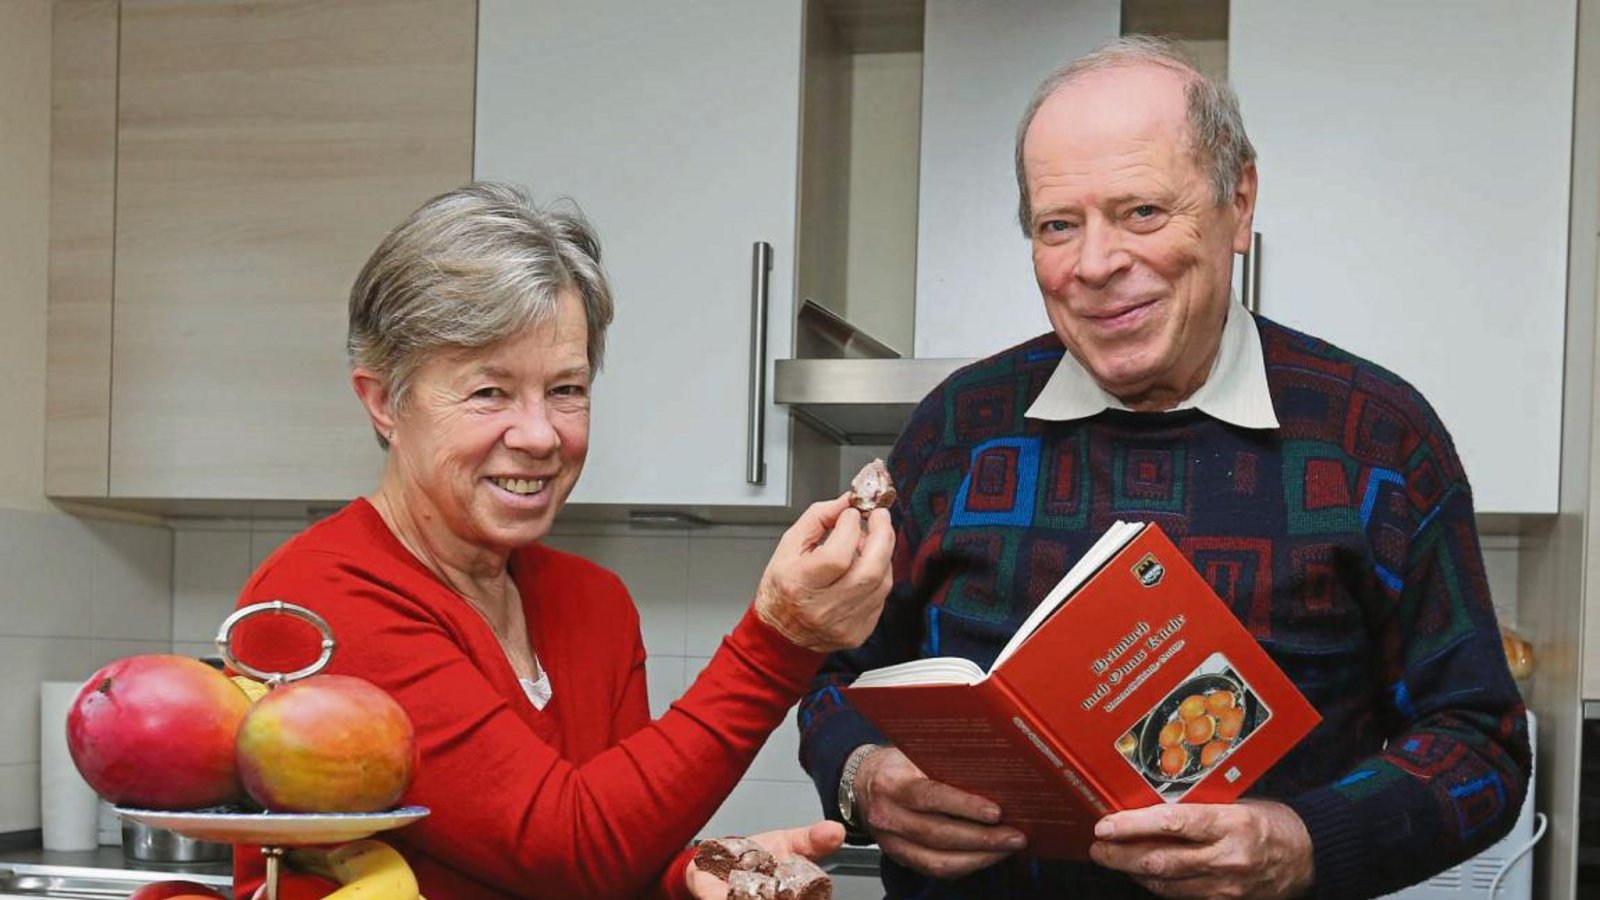 Marta Wolf bäckt und kocht, Oswald Hartmann probiert und schreibt auf – das Ergebnis ist ein donauschwäbisches Kochbuch. Foto: Küppers